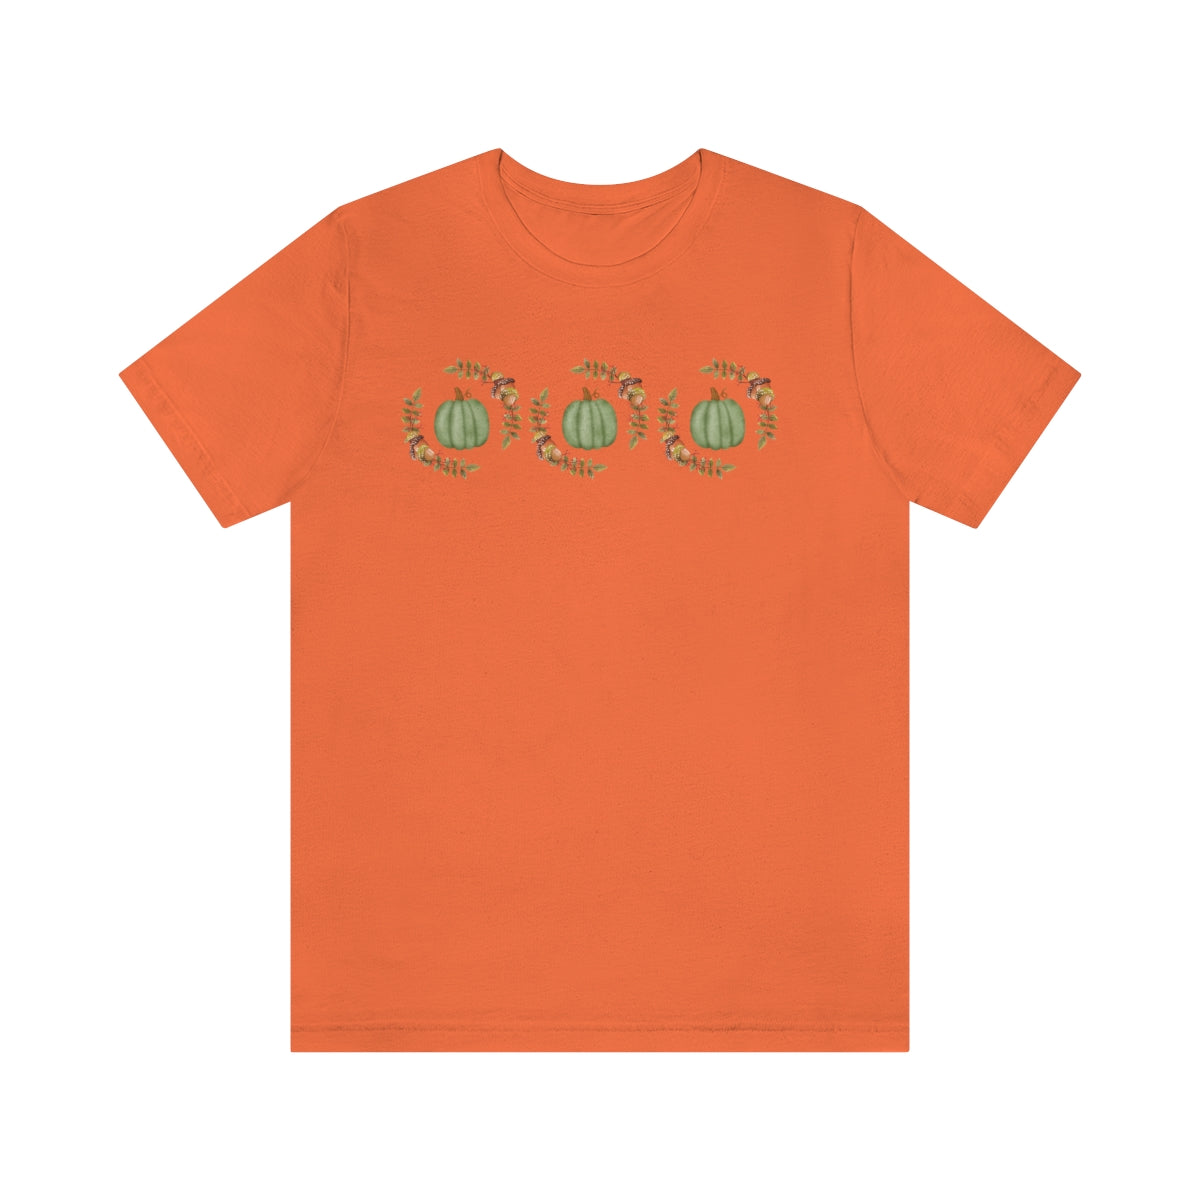 Fall Tshirt / Pumpkin Shirt / Autumn Tee